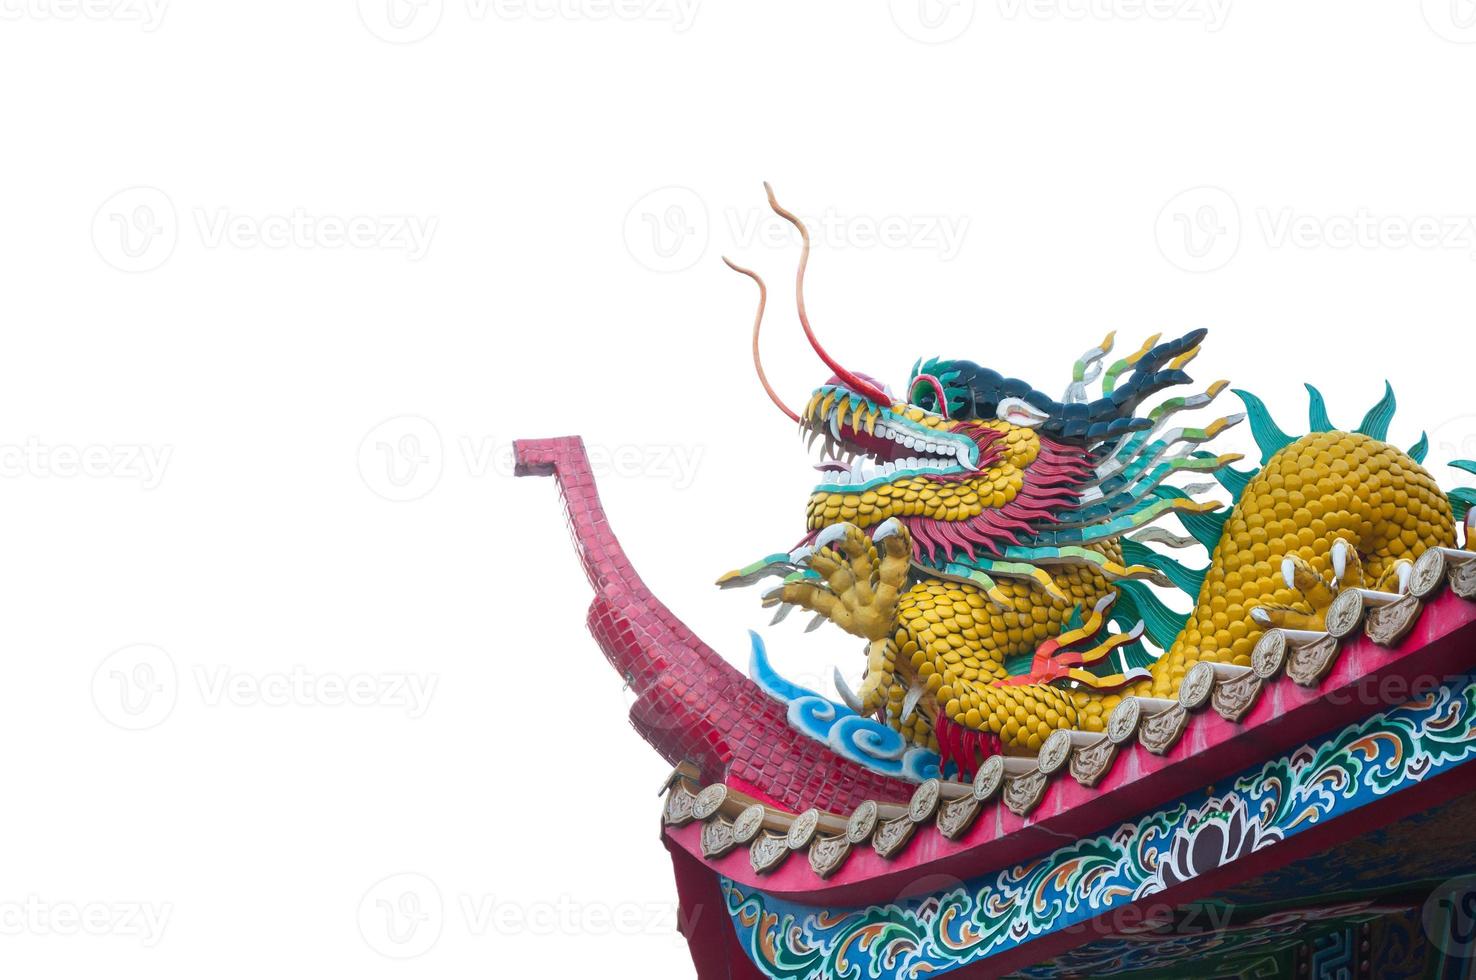 dargon estátua em santuário cobertura em branco plano de fundo, dragão estátua em China têmpora cobertura Como ásia arte foto